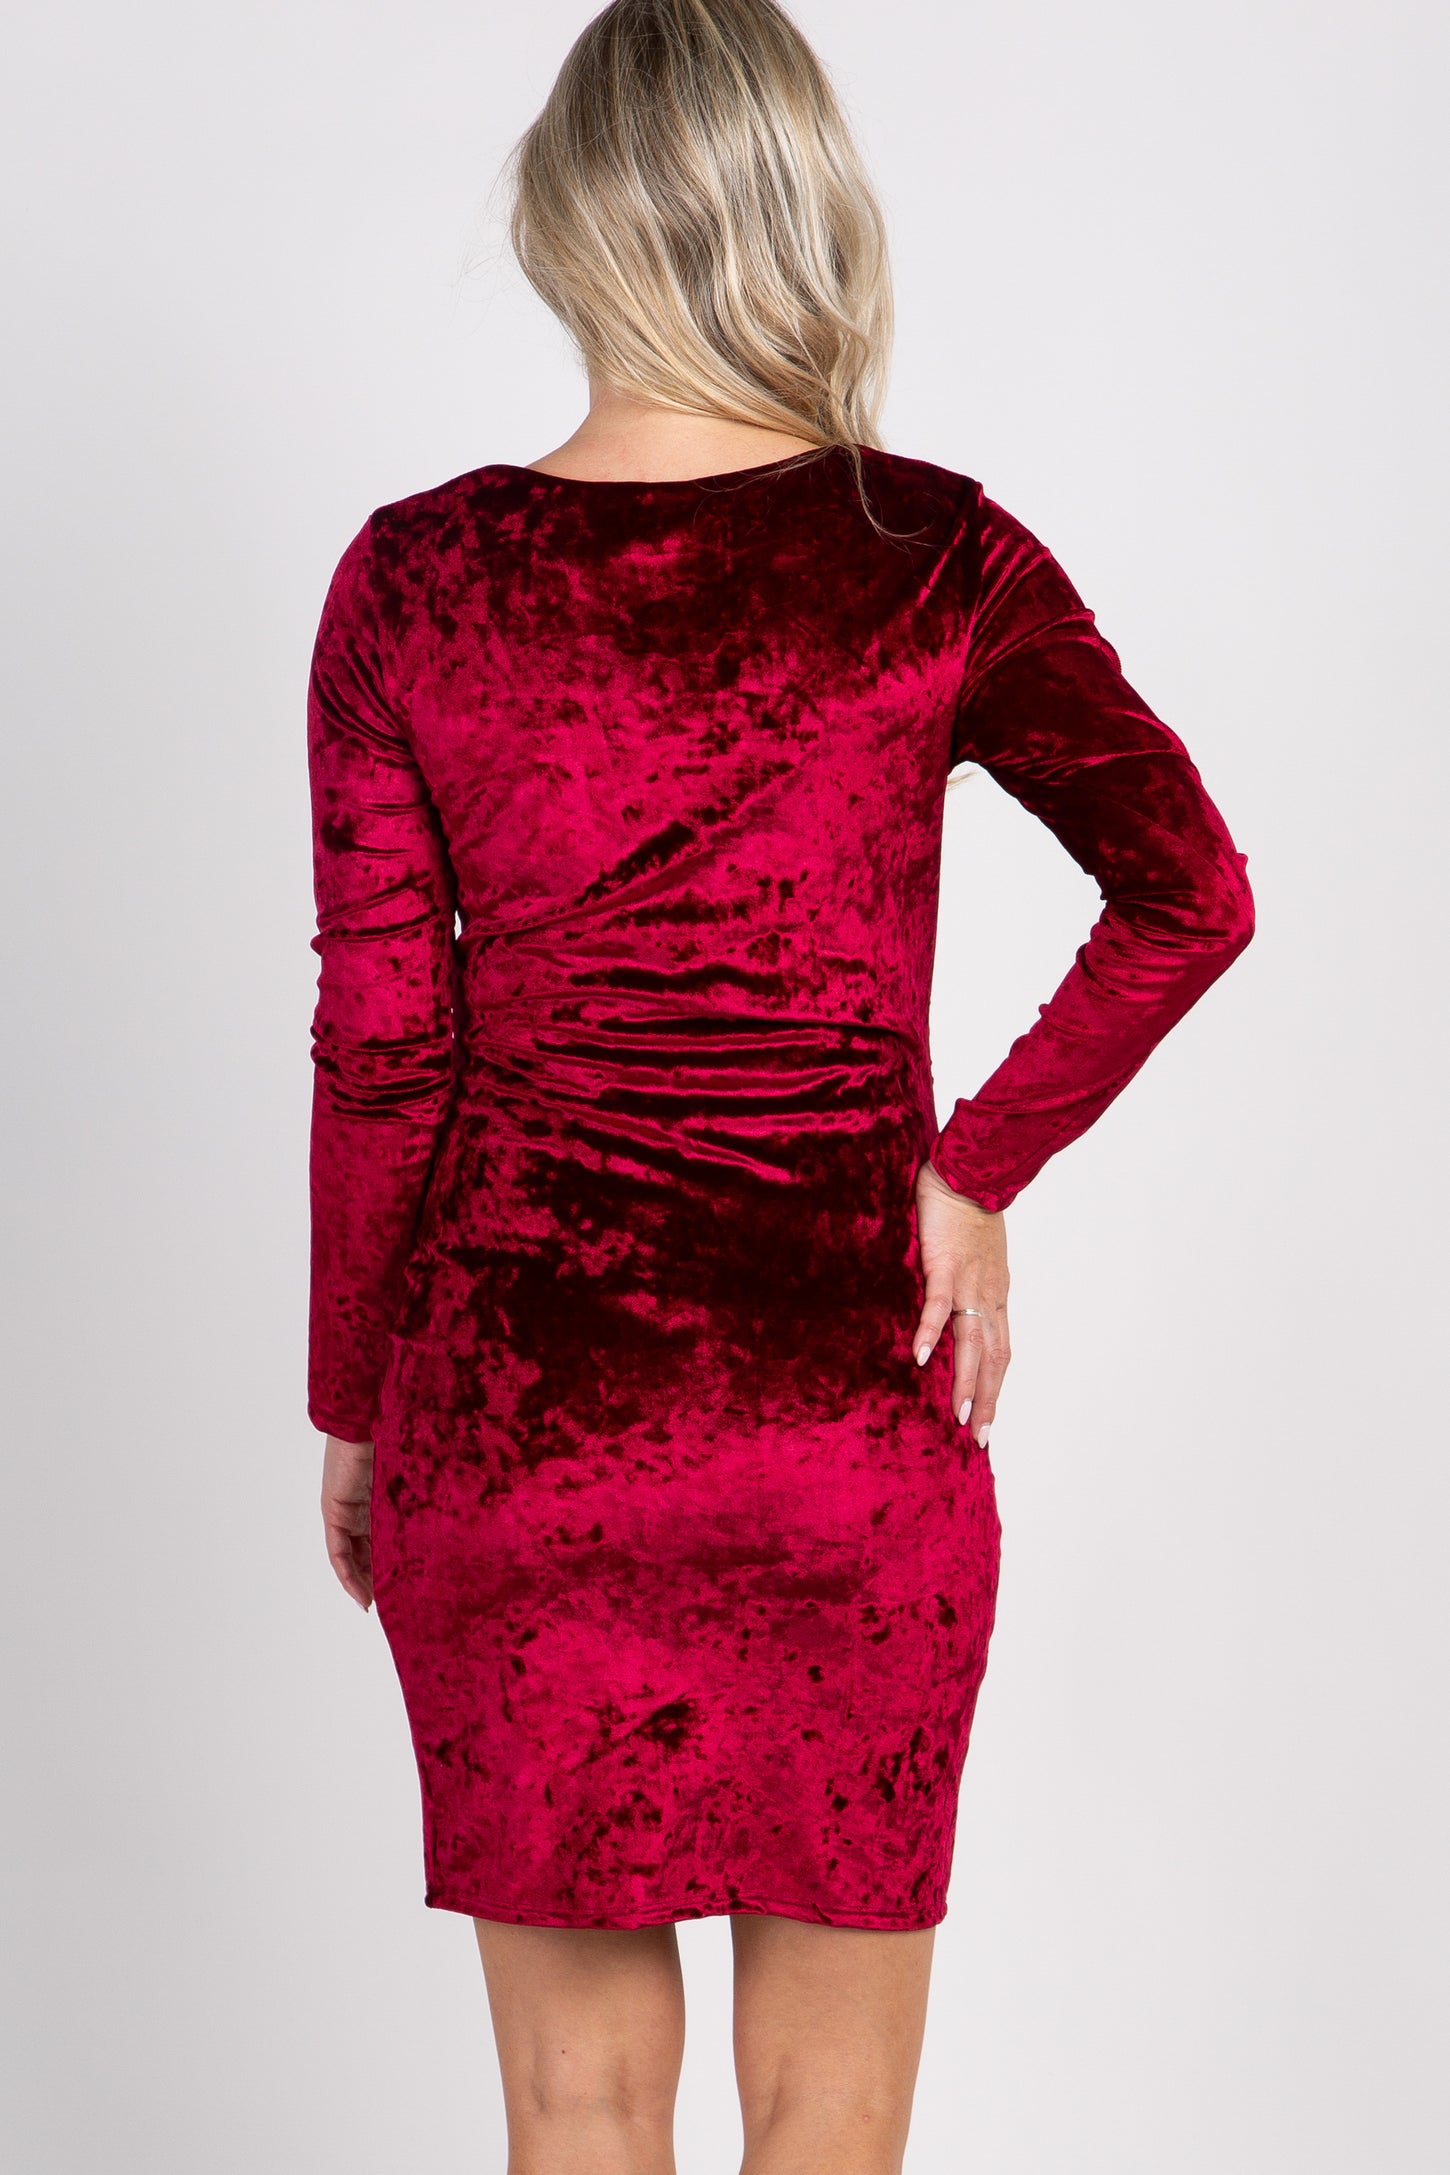 PinkBlush Burgundy Velvet Fitted Long Sleeve Maternity Dress